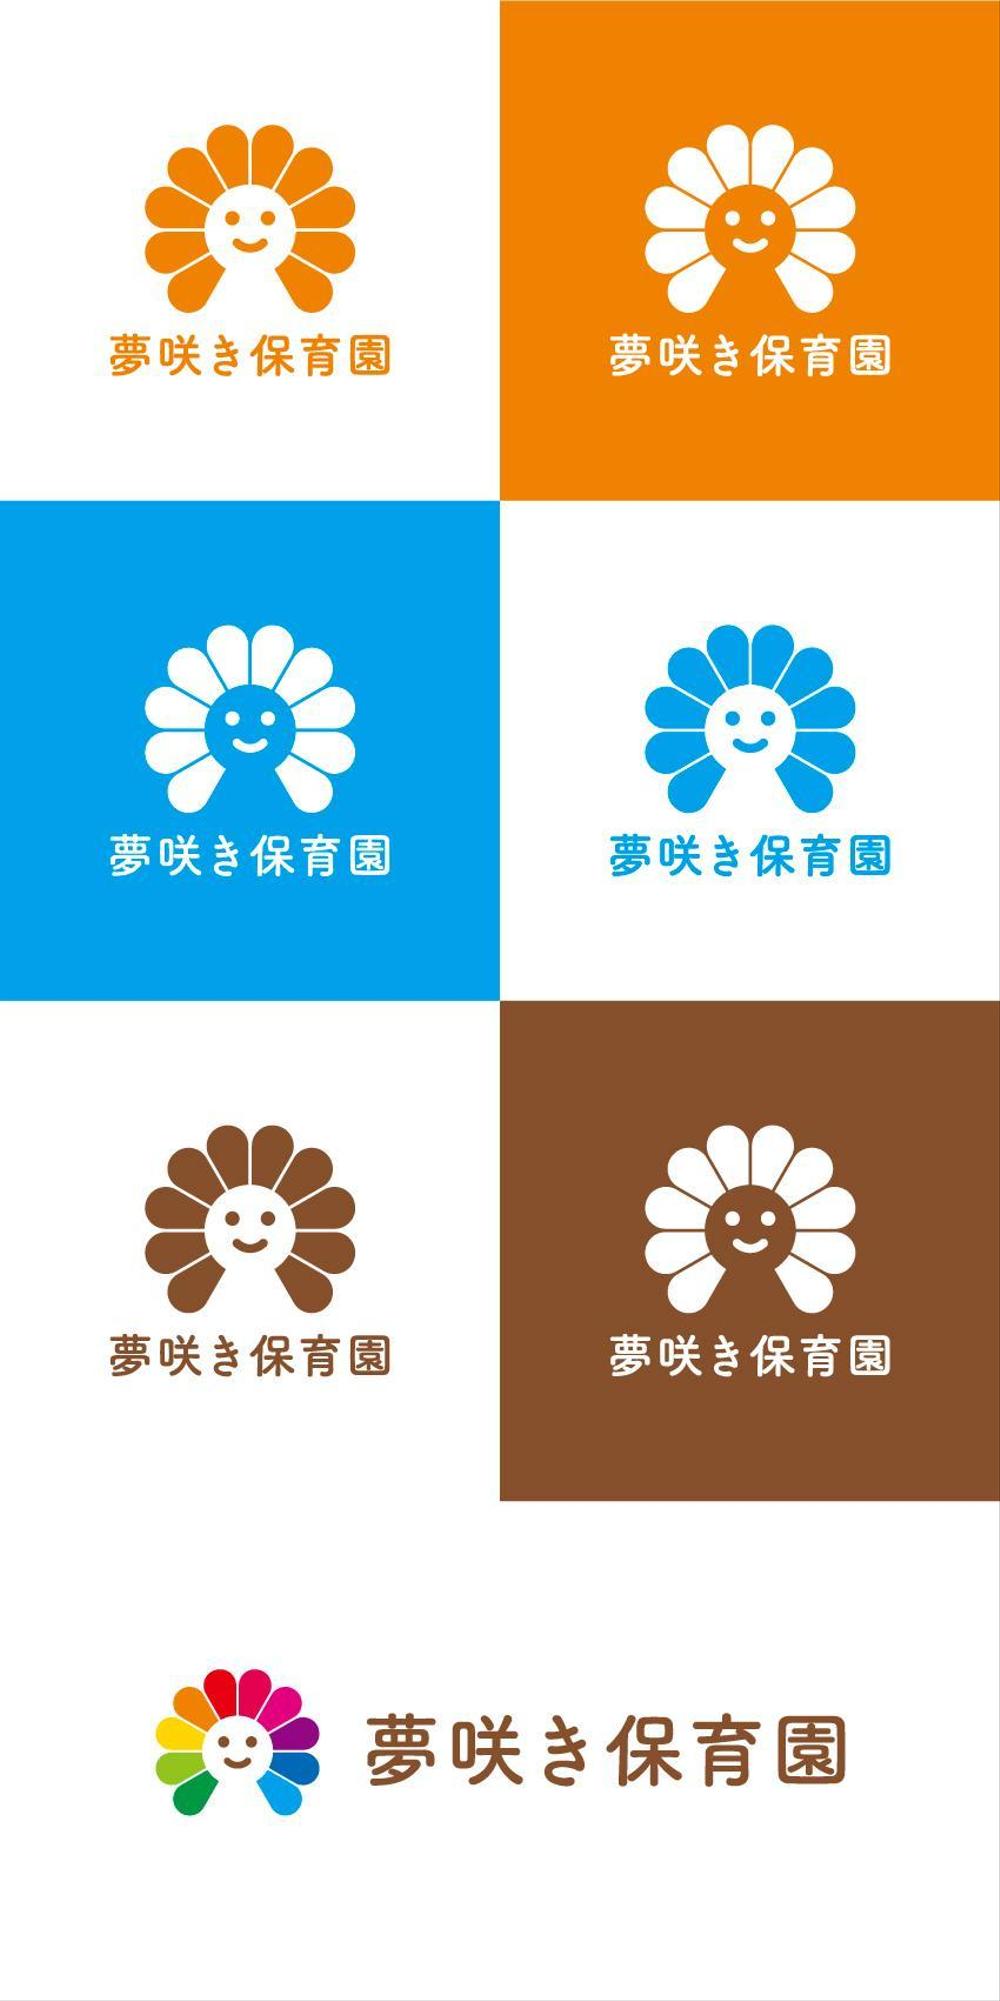 企業主導型保育園「夢咲き保育園」のロゴ